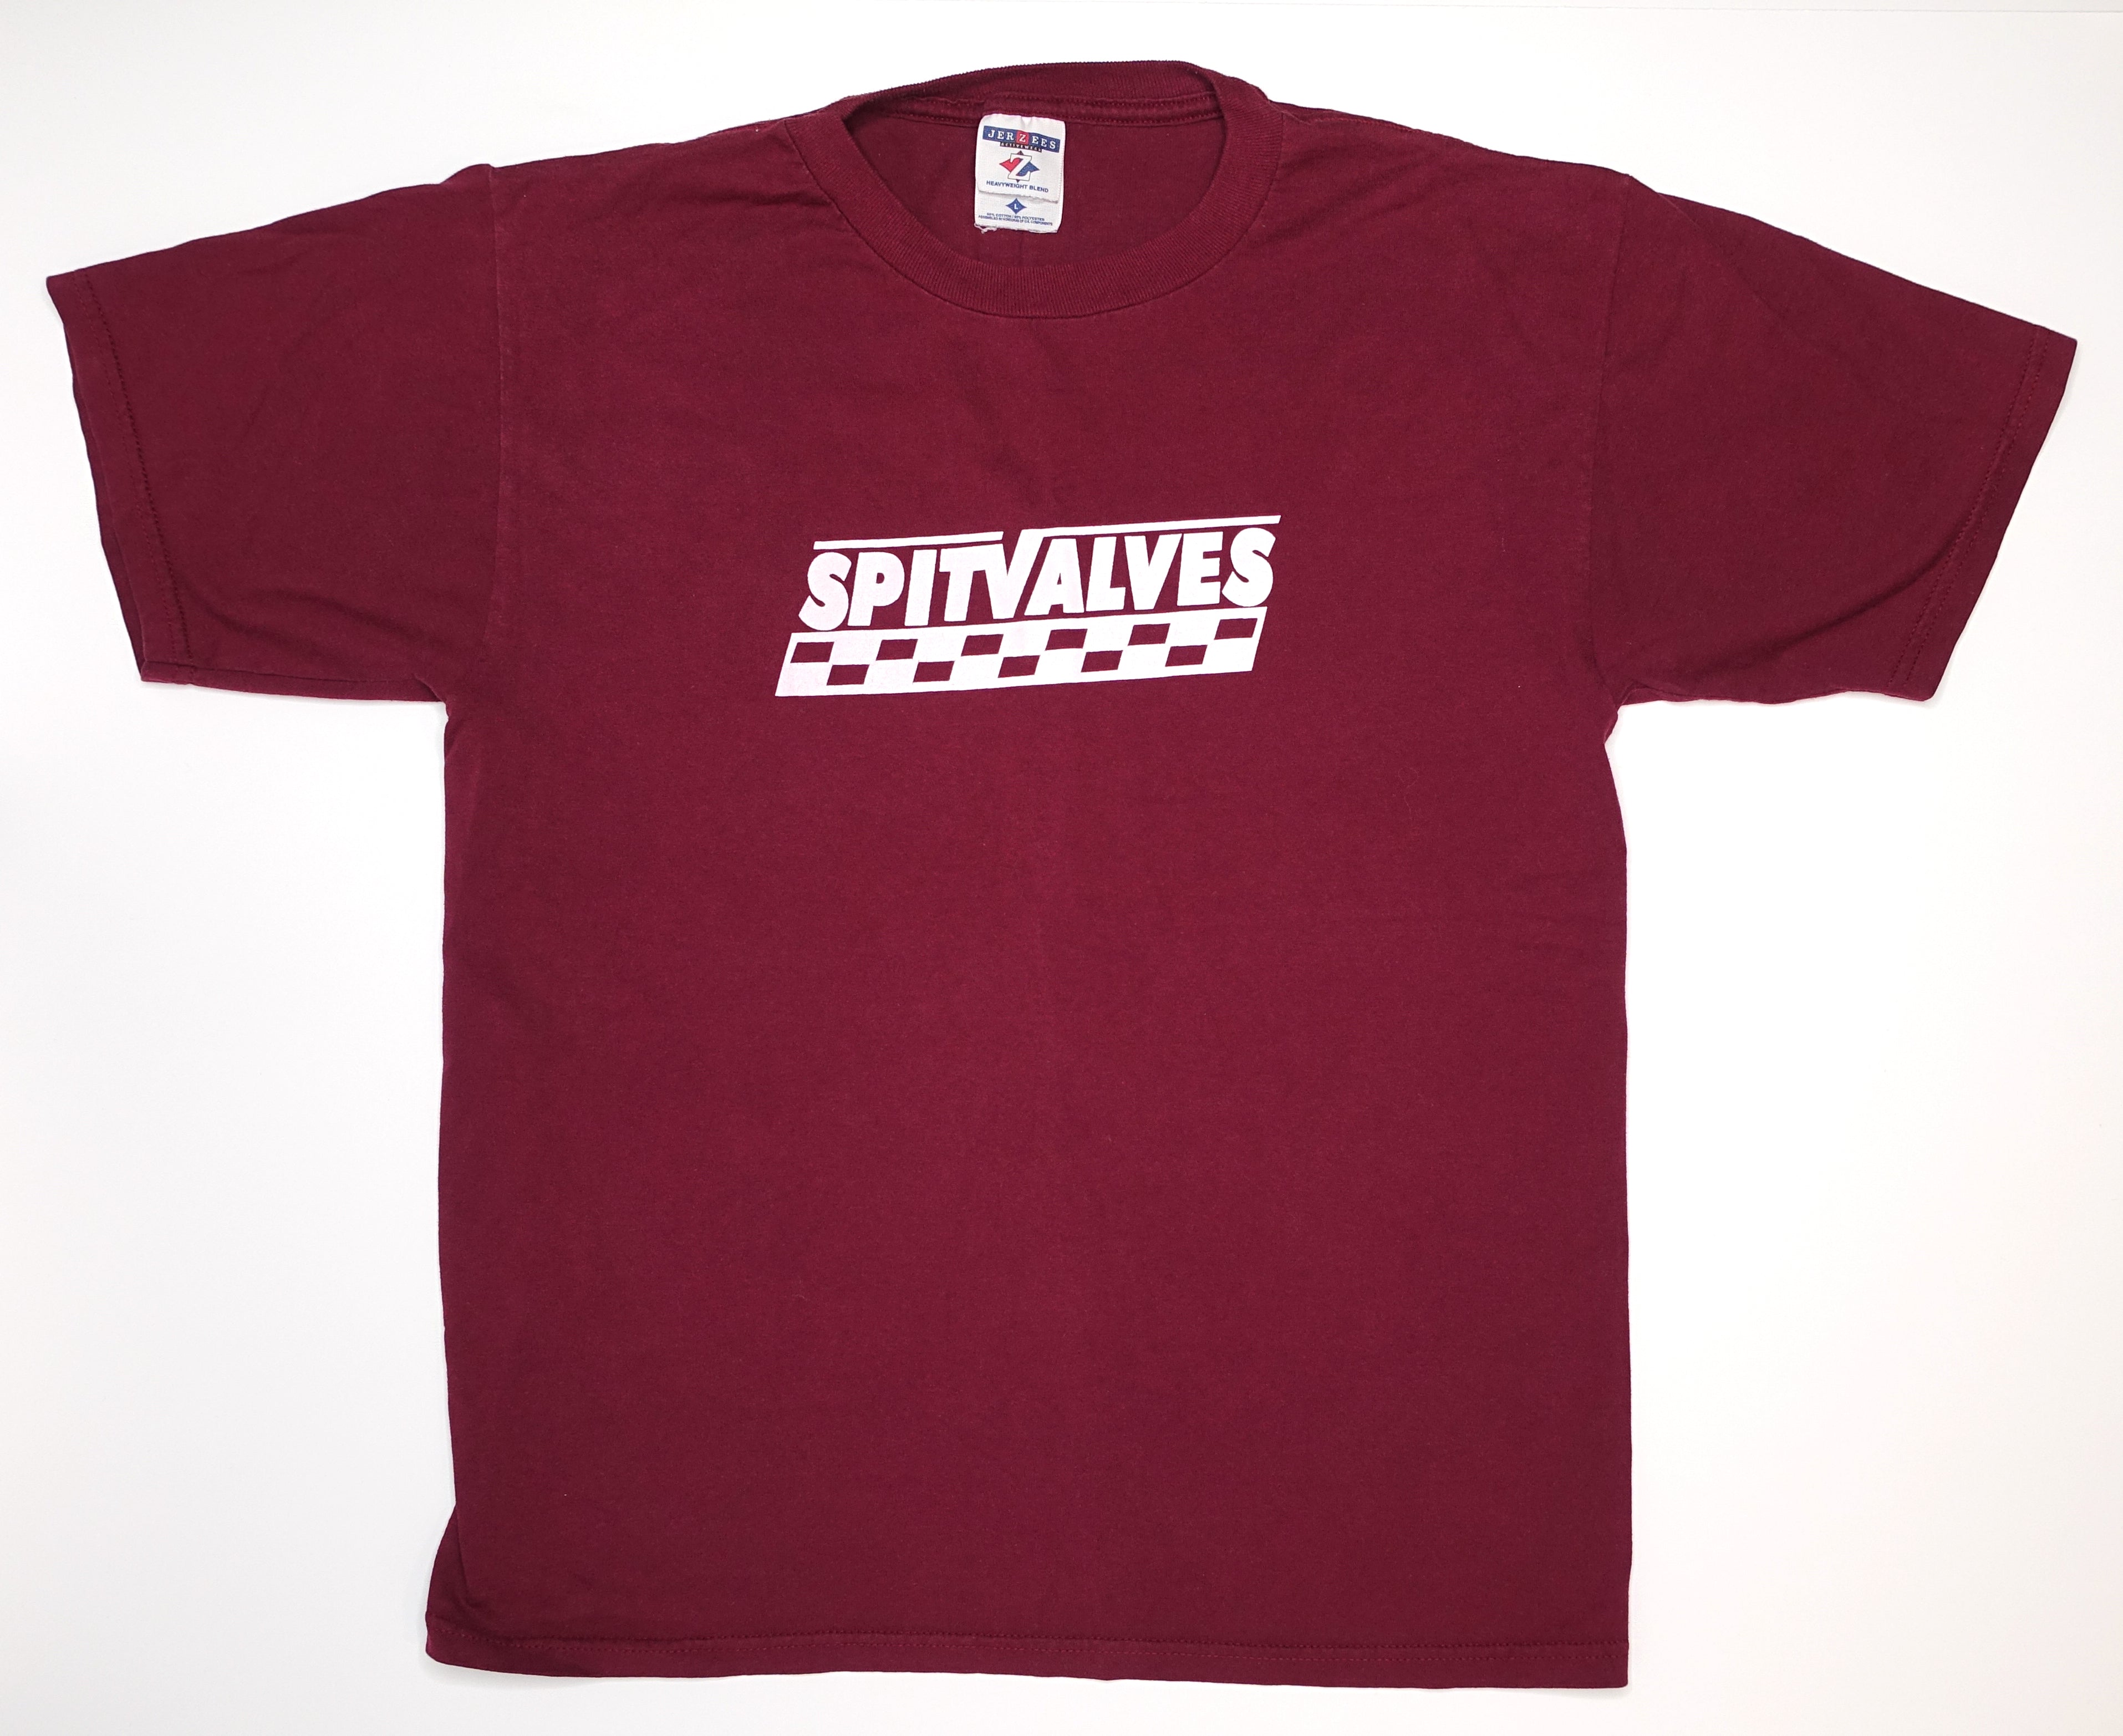 Spitvalves – Skacore '93 Tour Shirt Size Large